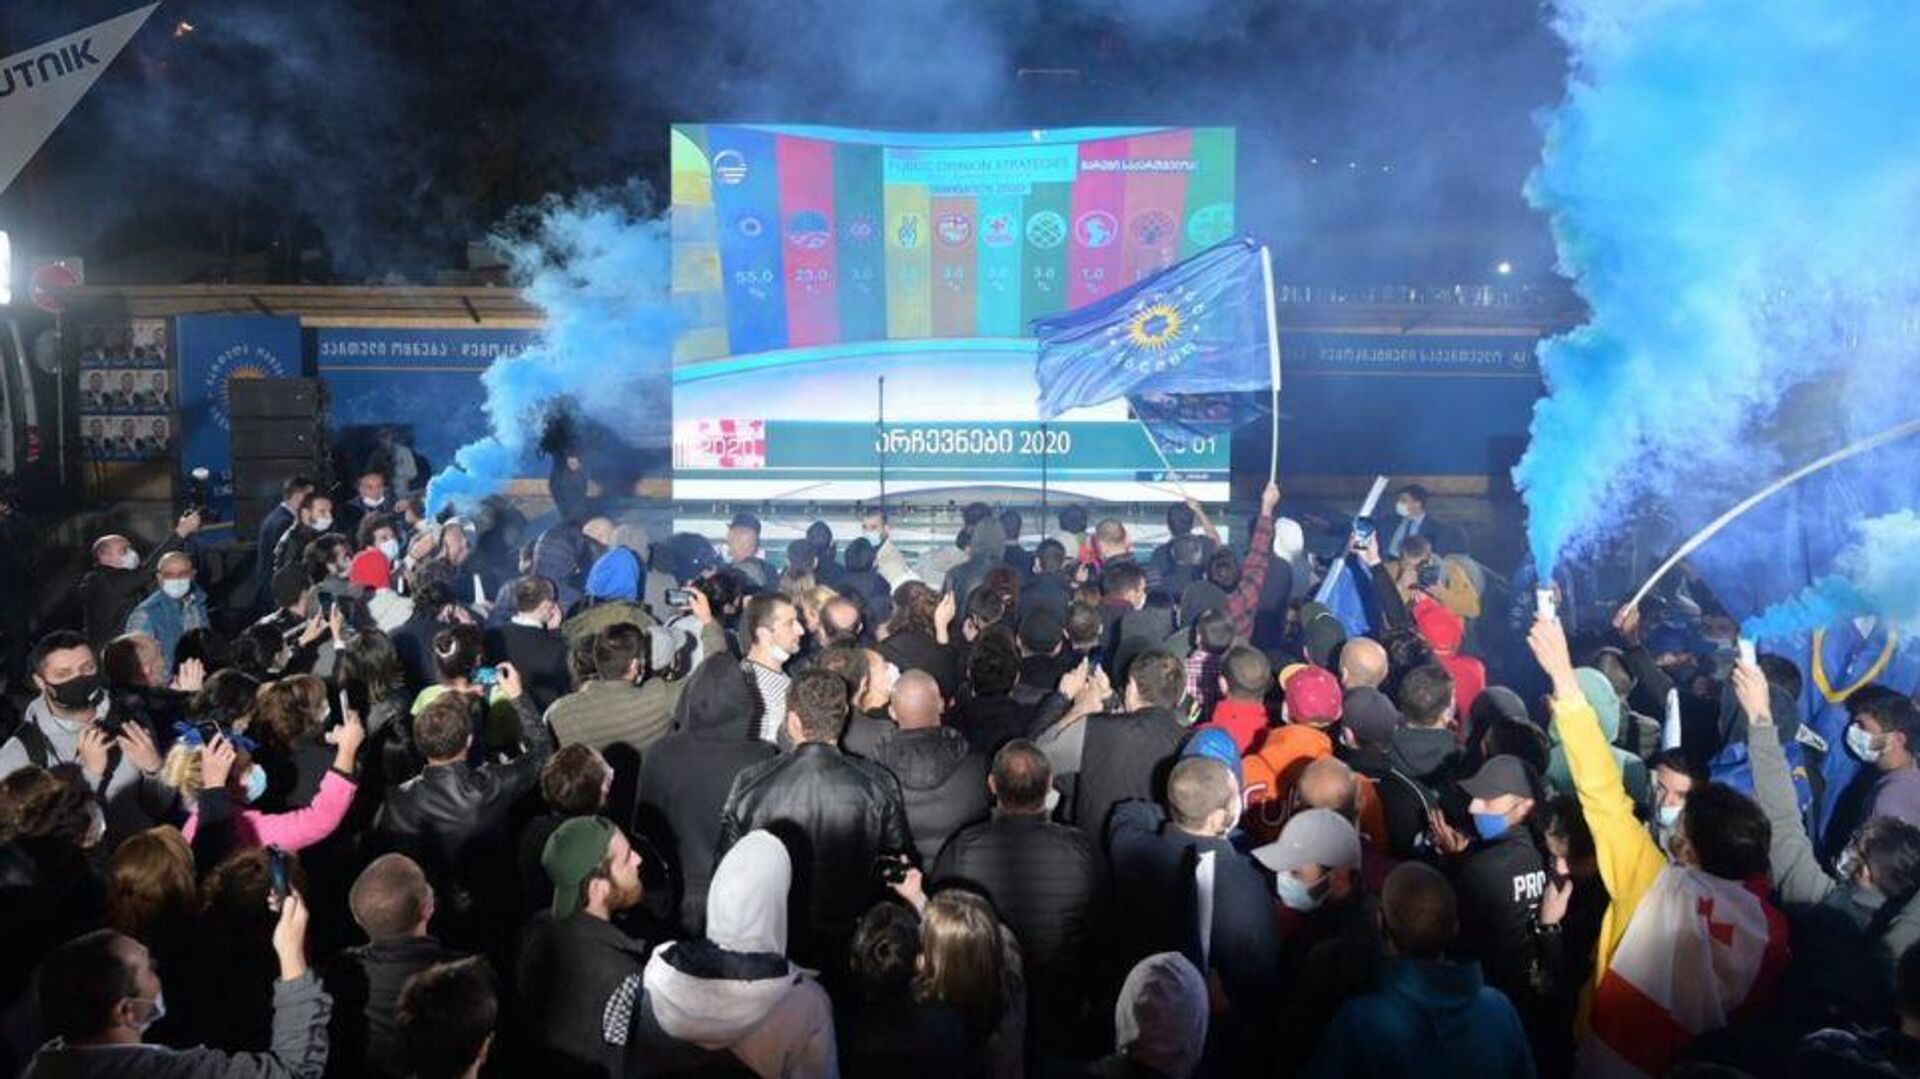 Правящая партия Грузинская мечта отмечает завершение парламентских выборов 2020 - РИА Новости, 1920, 01.11.2020